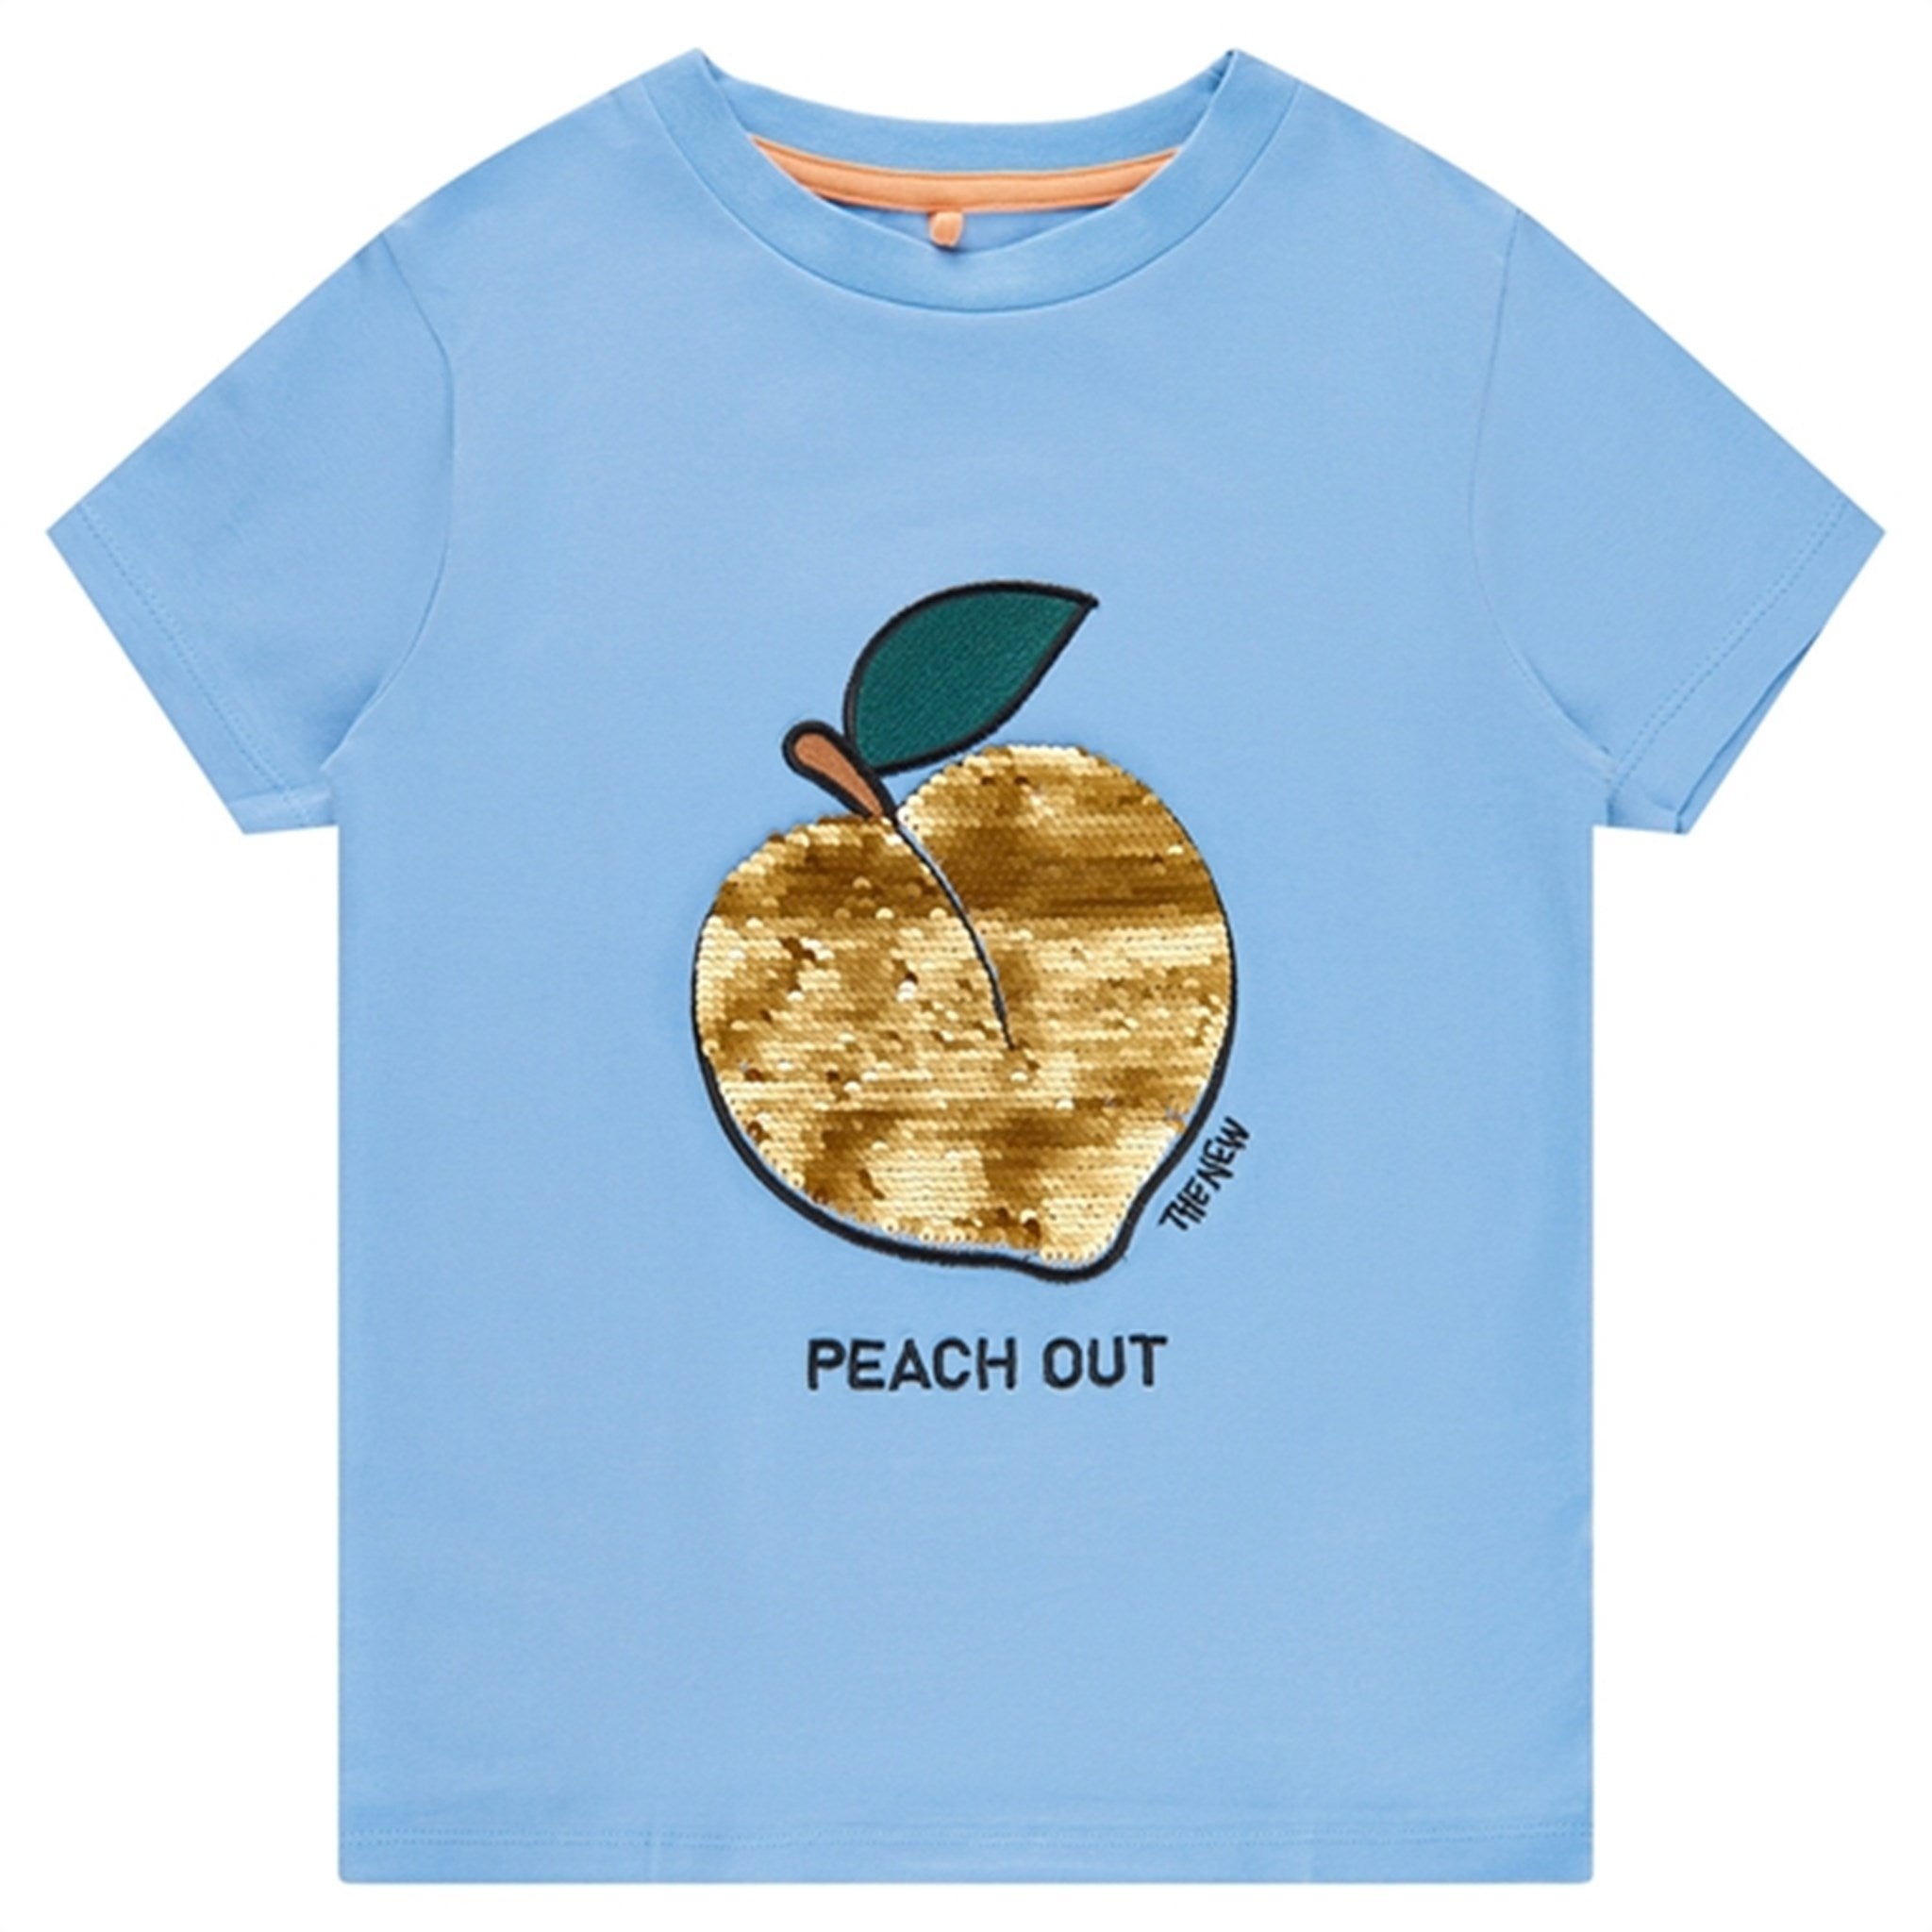 THE NEW Bel Air Blue Feach T-shirt 2